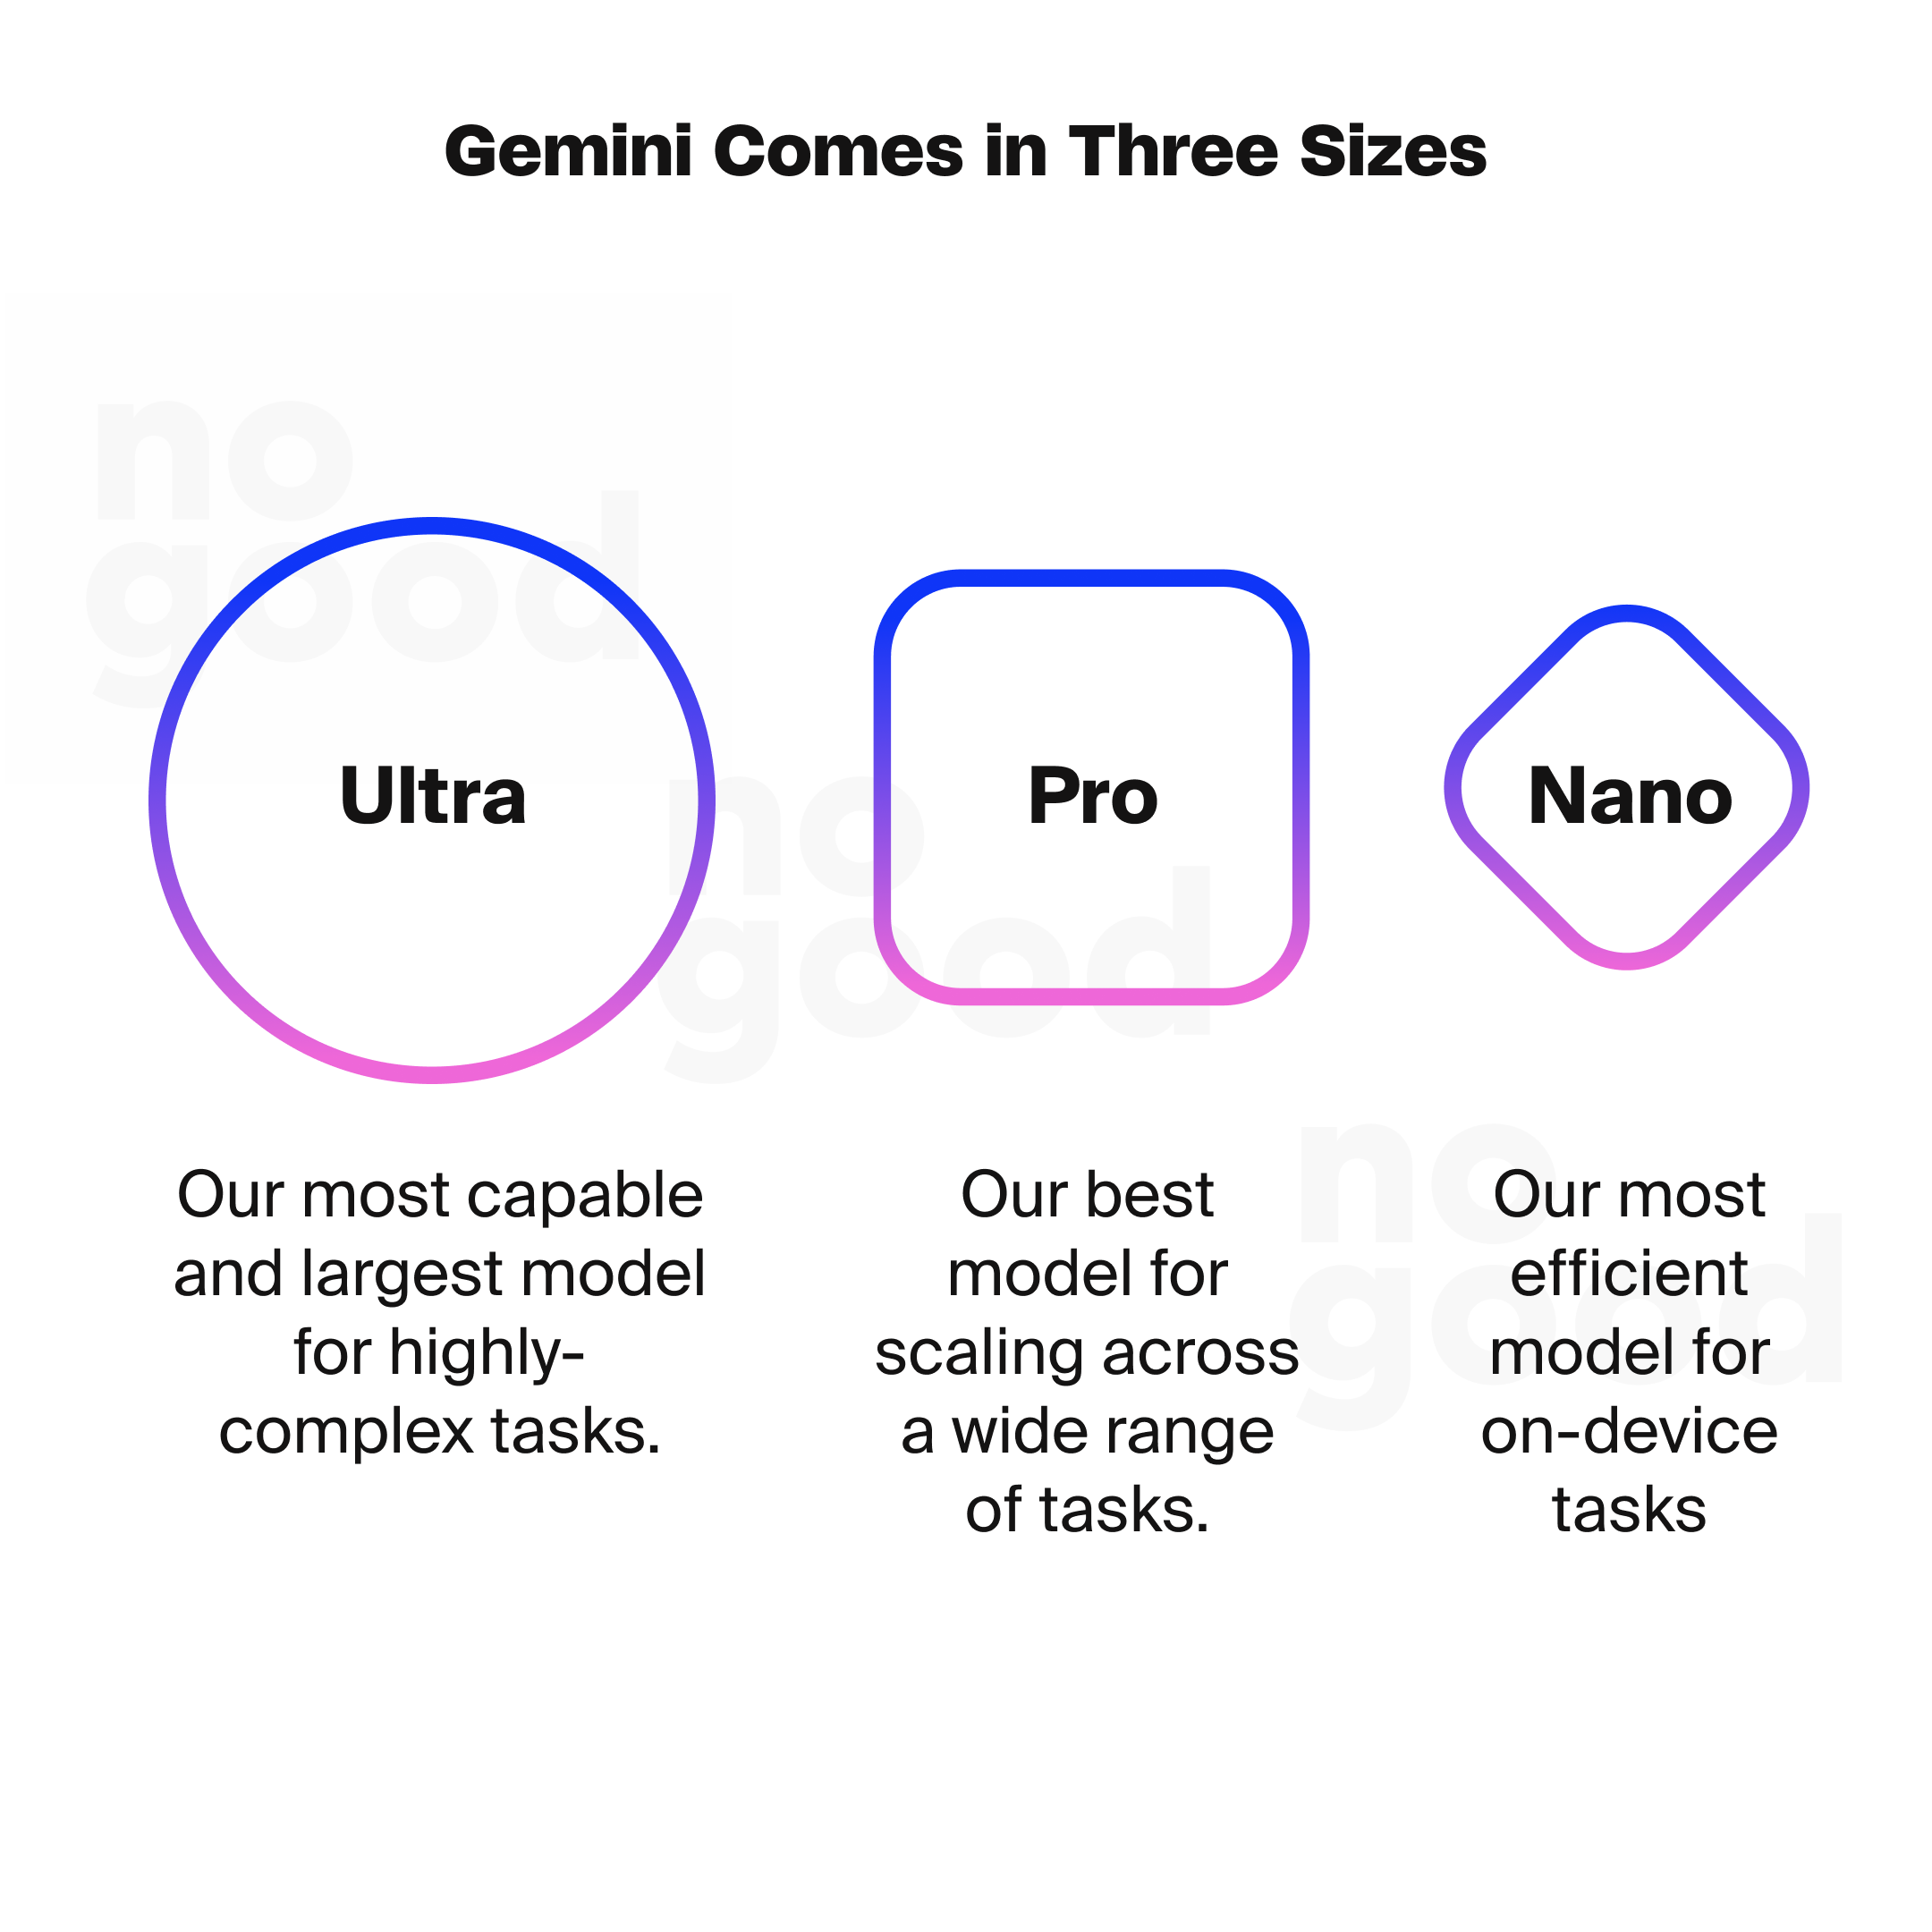 Gemini comes in three sizes: Ultra, Pro, and Nano